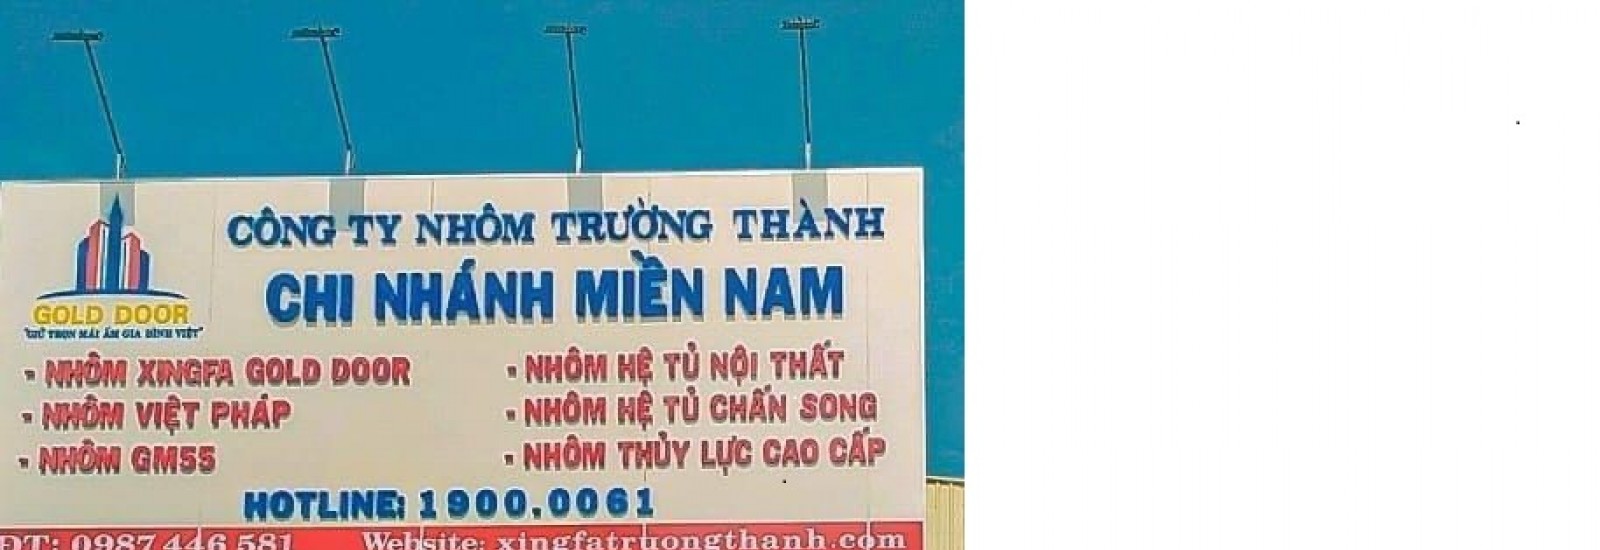 Công ty TNHH SX NHÔM TRƯỜNG THÀNH